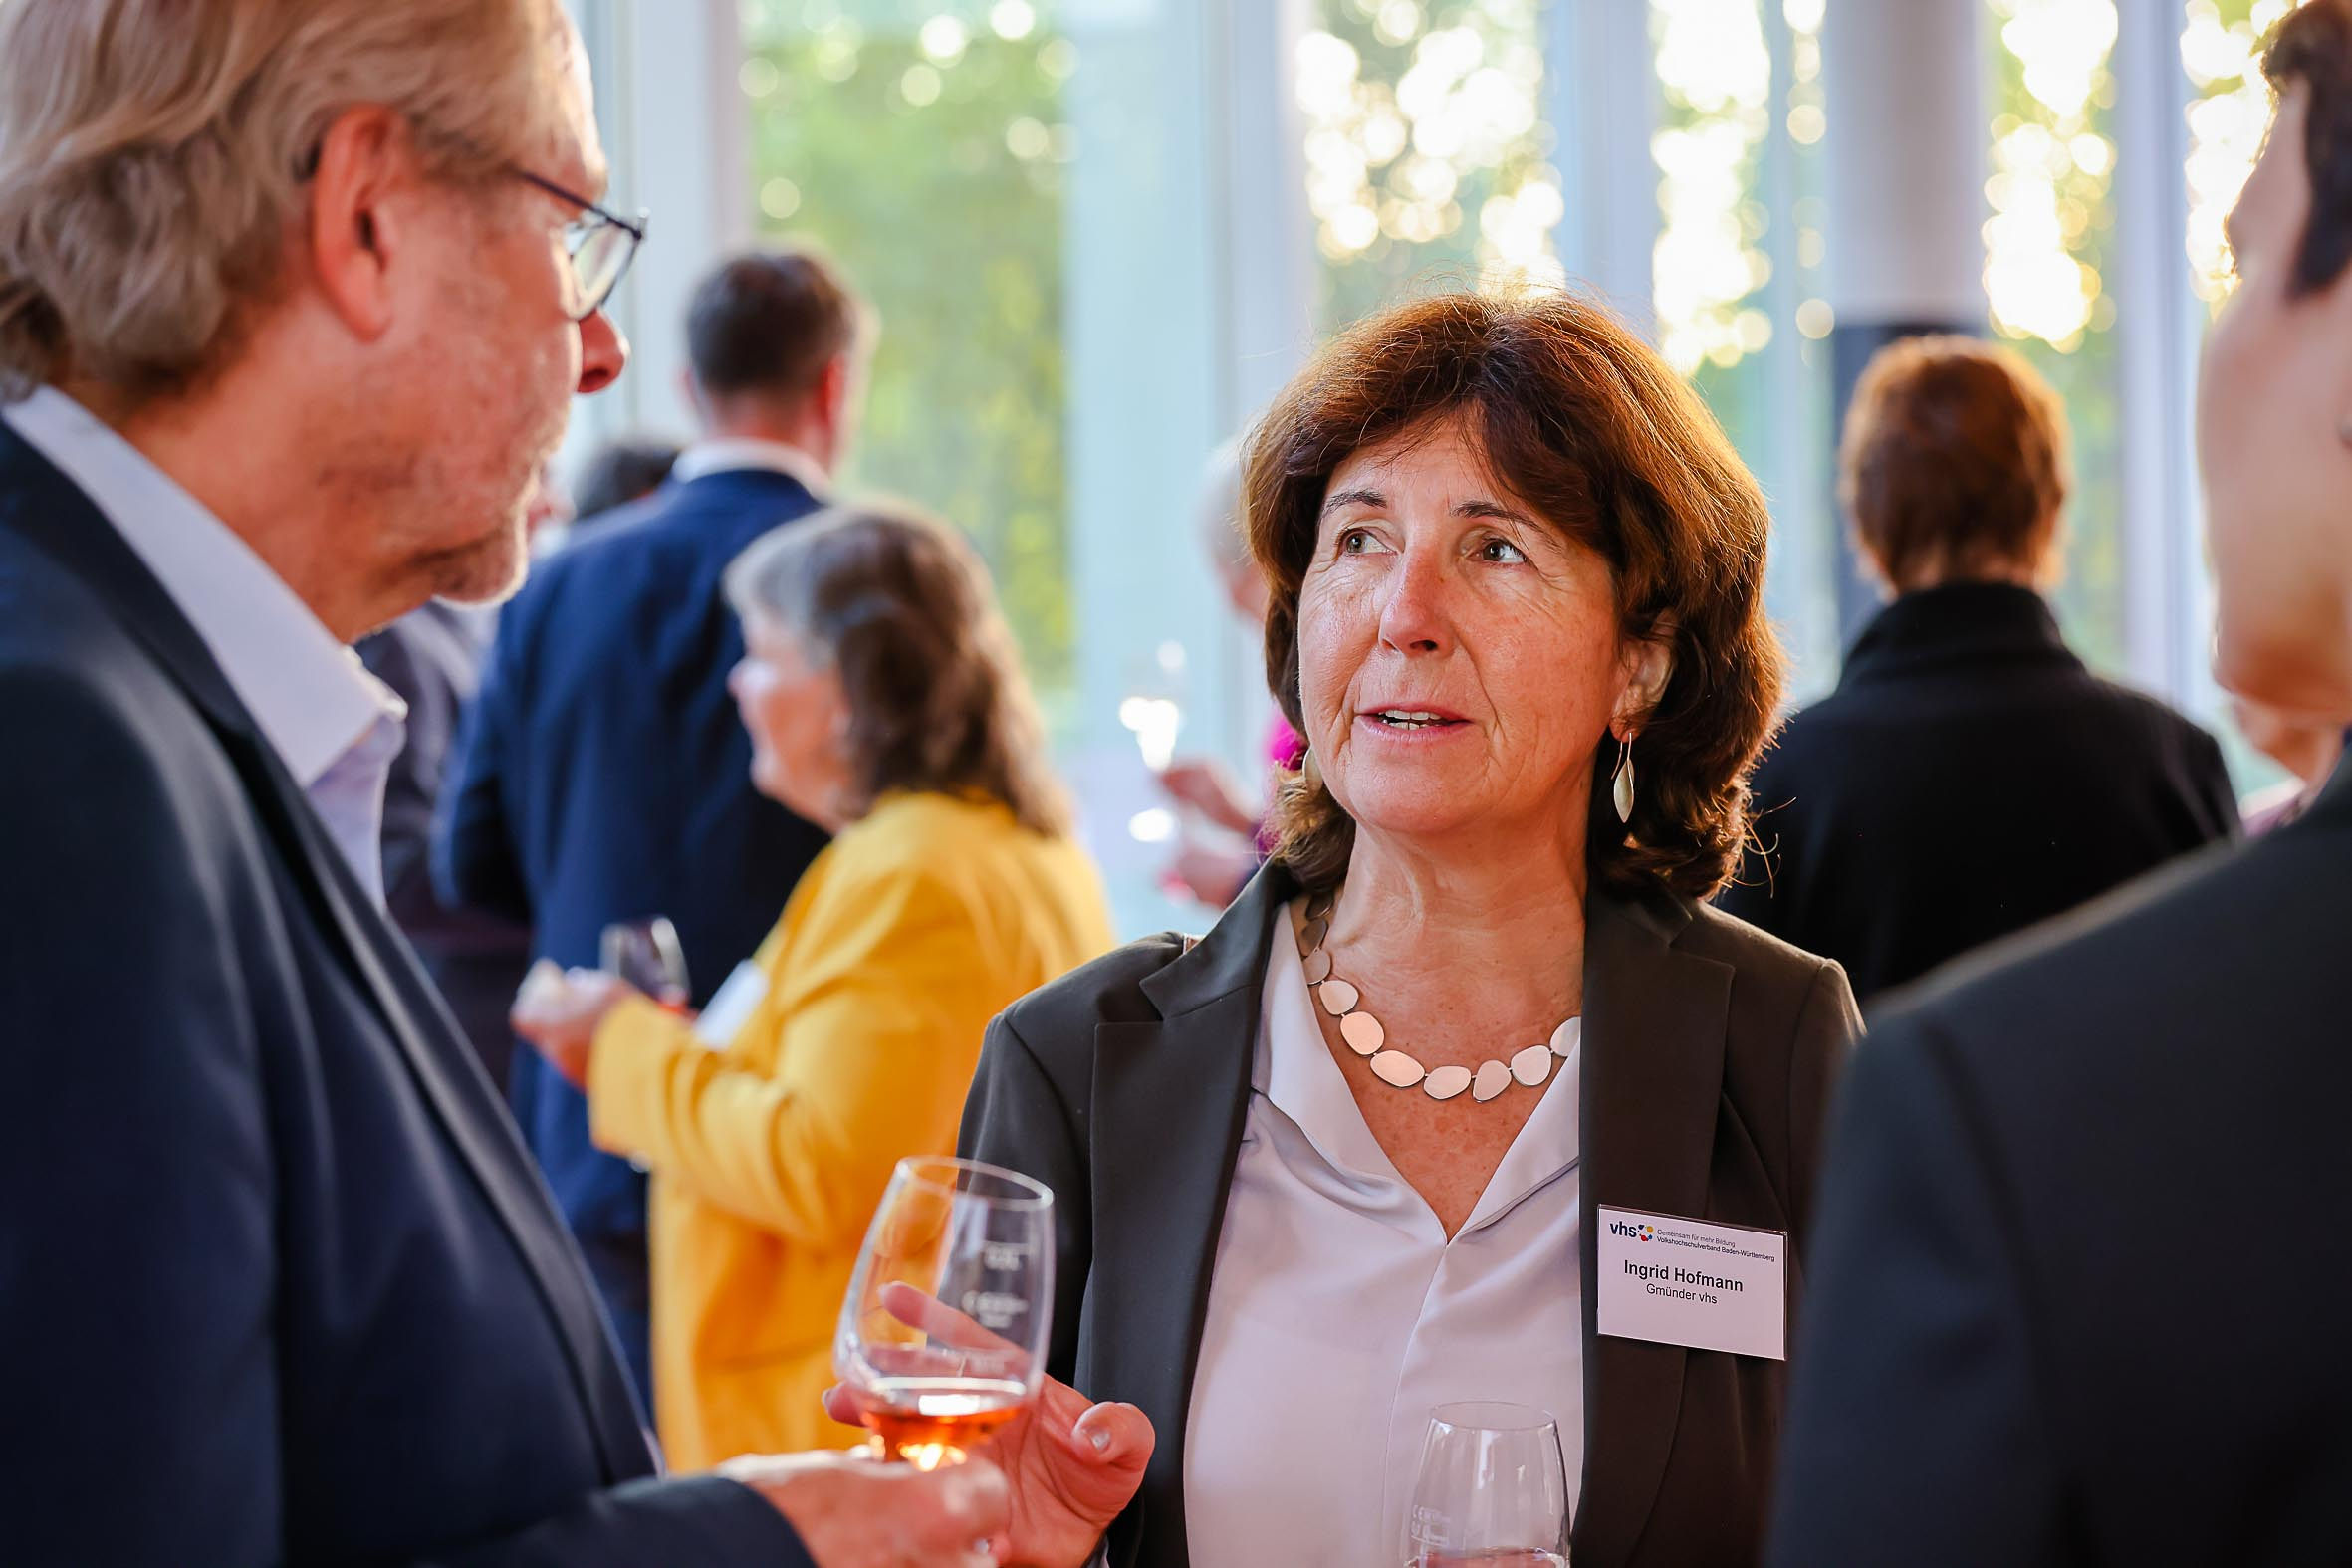 Foto: Ingrid Hofmann, Gmünder vhs, im Gespräch beim Parlamentarischen Abend 2022